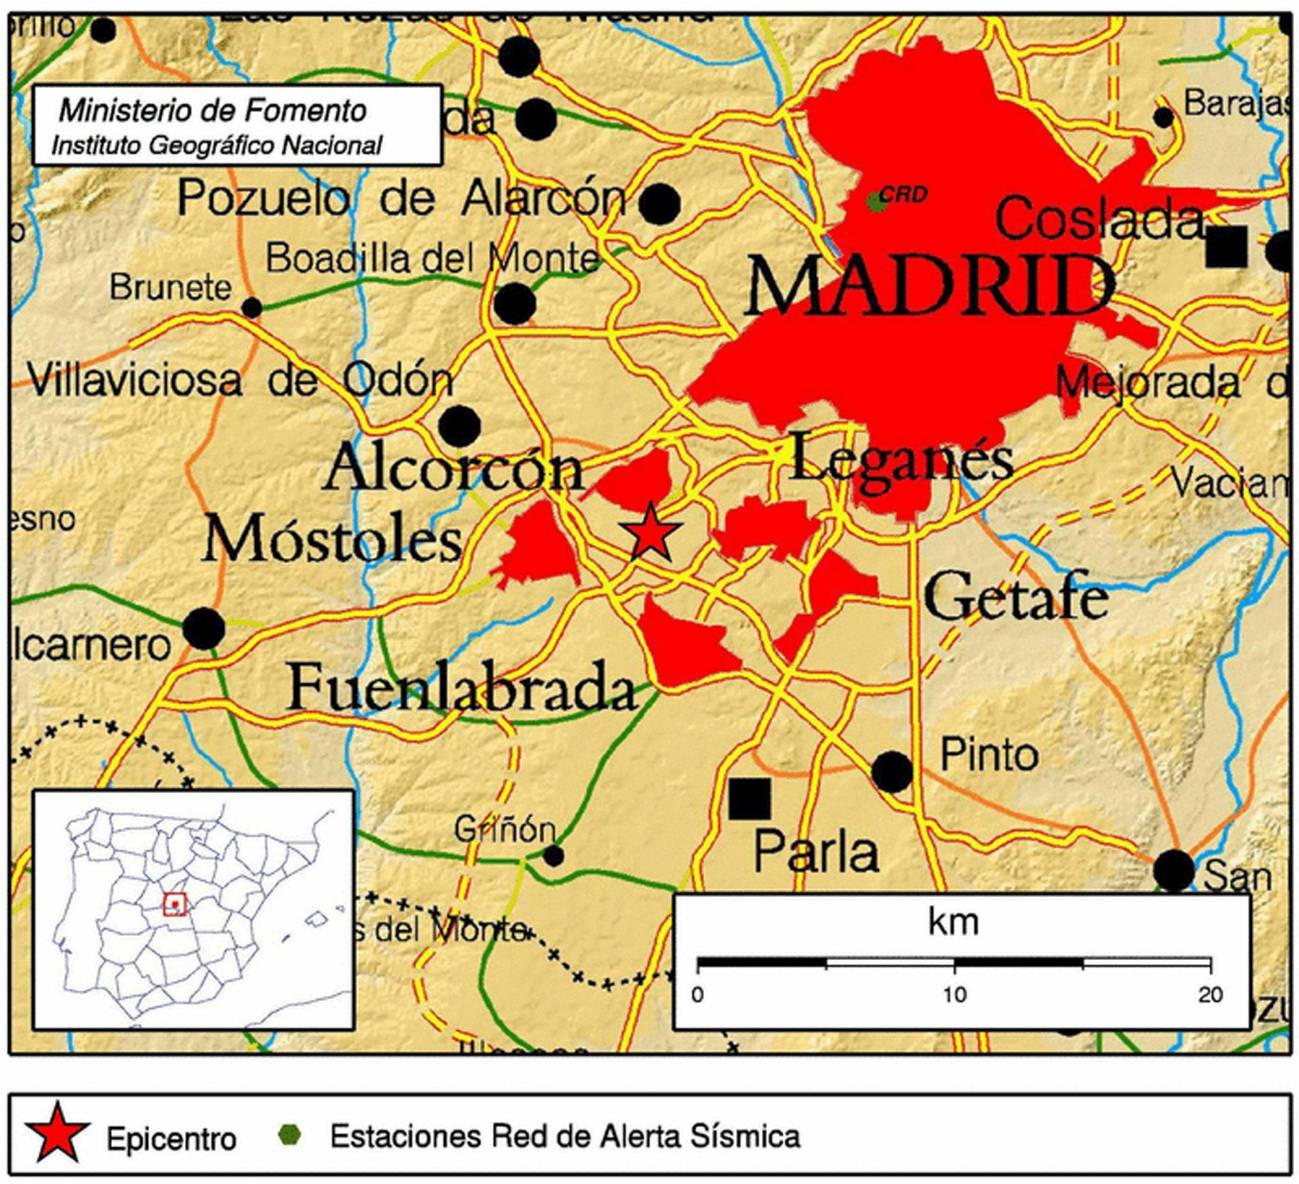 Imagen facilitada por el IGN del mapa de la Comunidad de Madrid que muestra el epicentro del movimiento sísmico que se ha registrado a las 07.34 horas de esta mañana